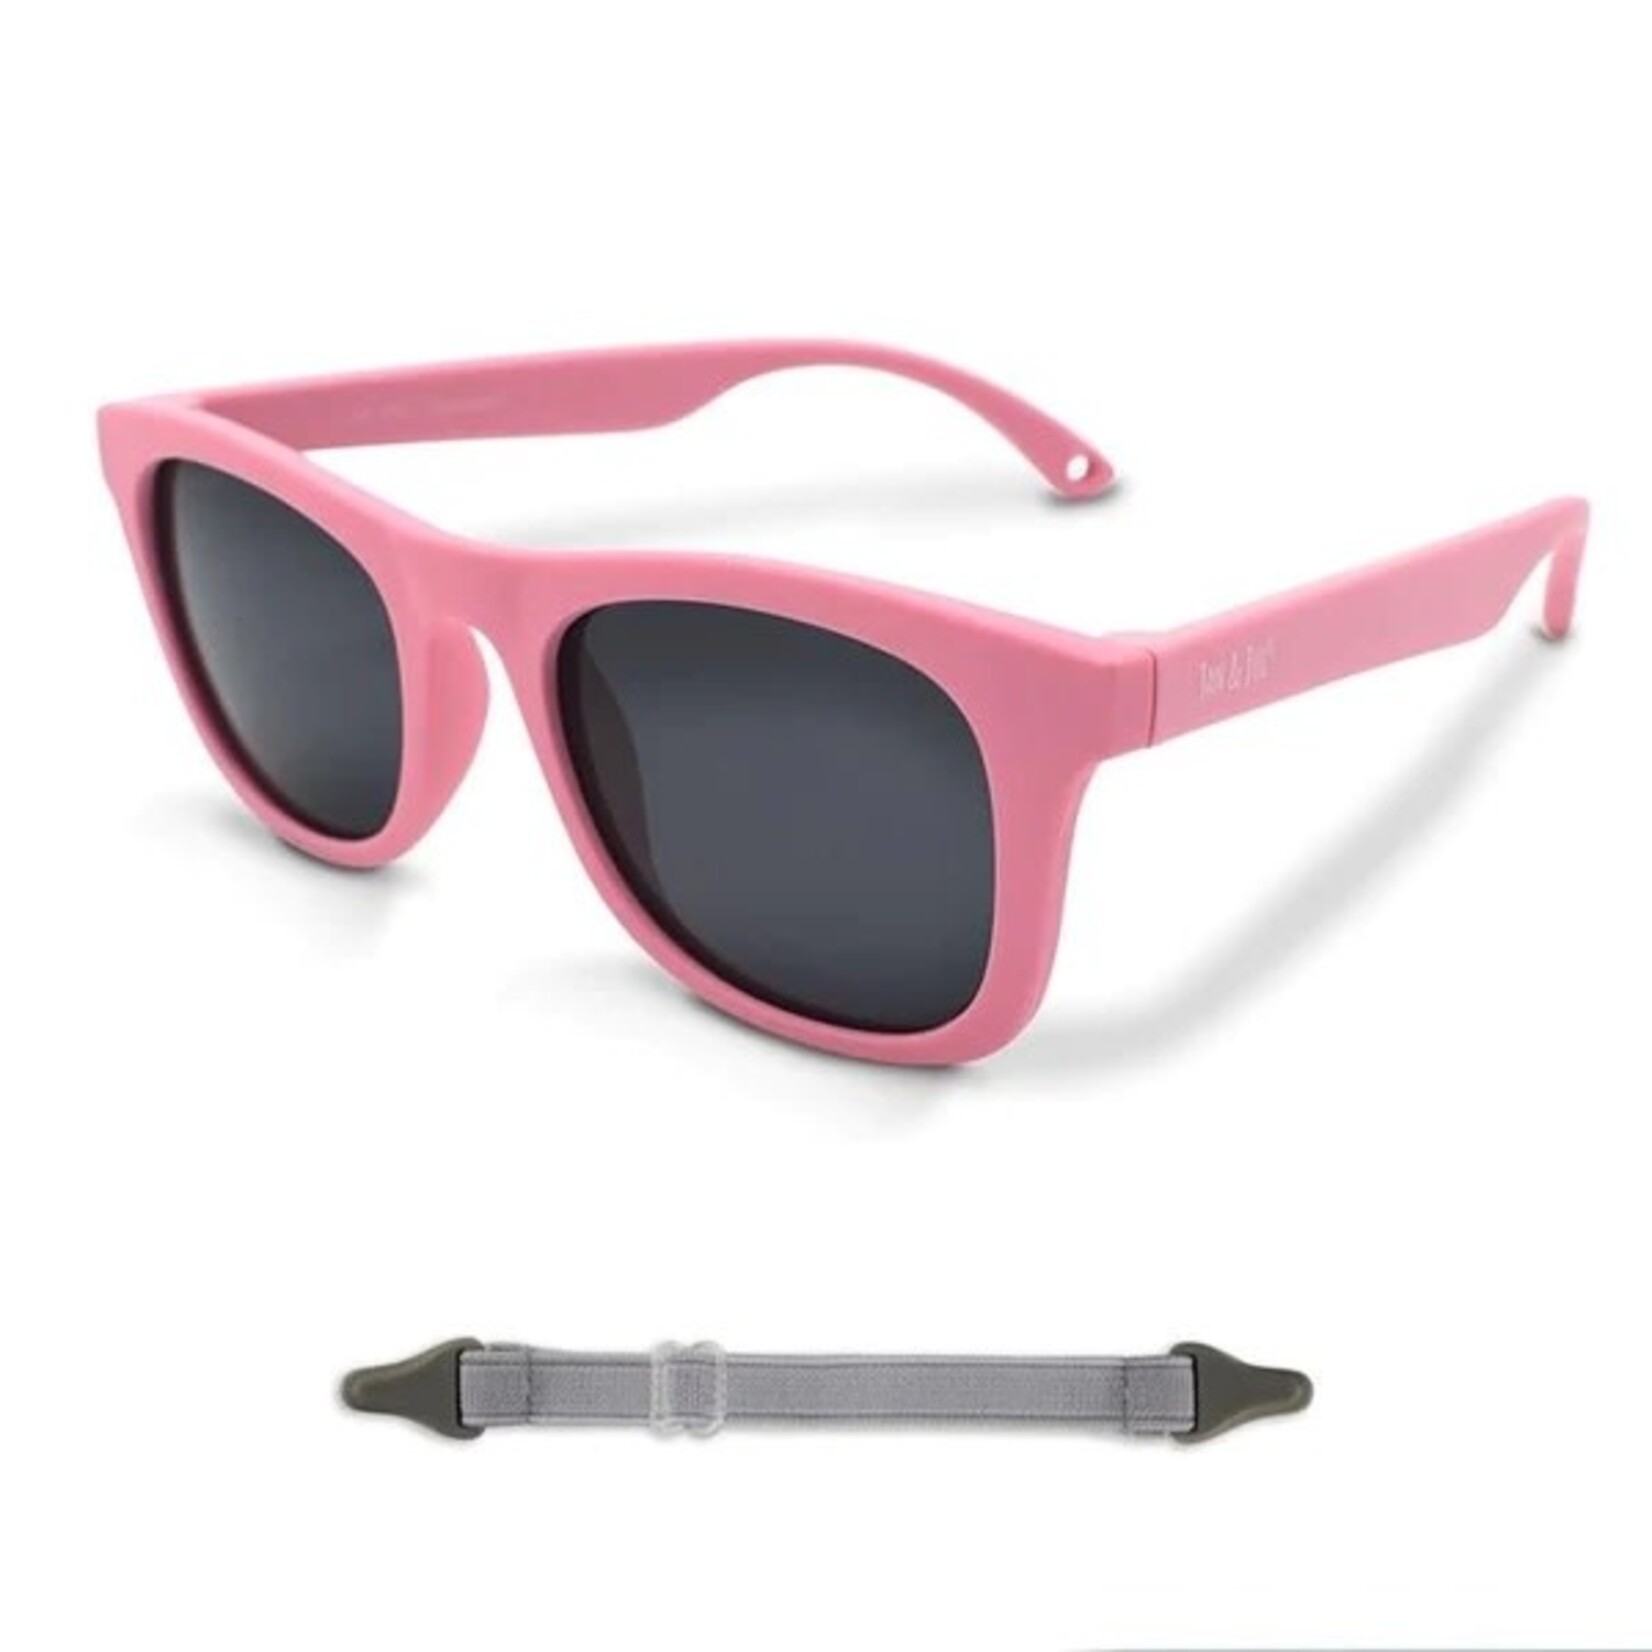 Jan & Jul Sunglasses Urban Explorer - Peachy Pink (2-6Y)